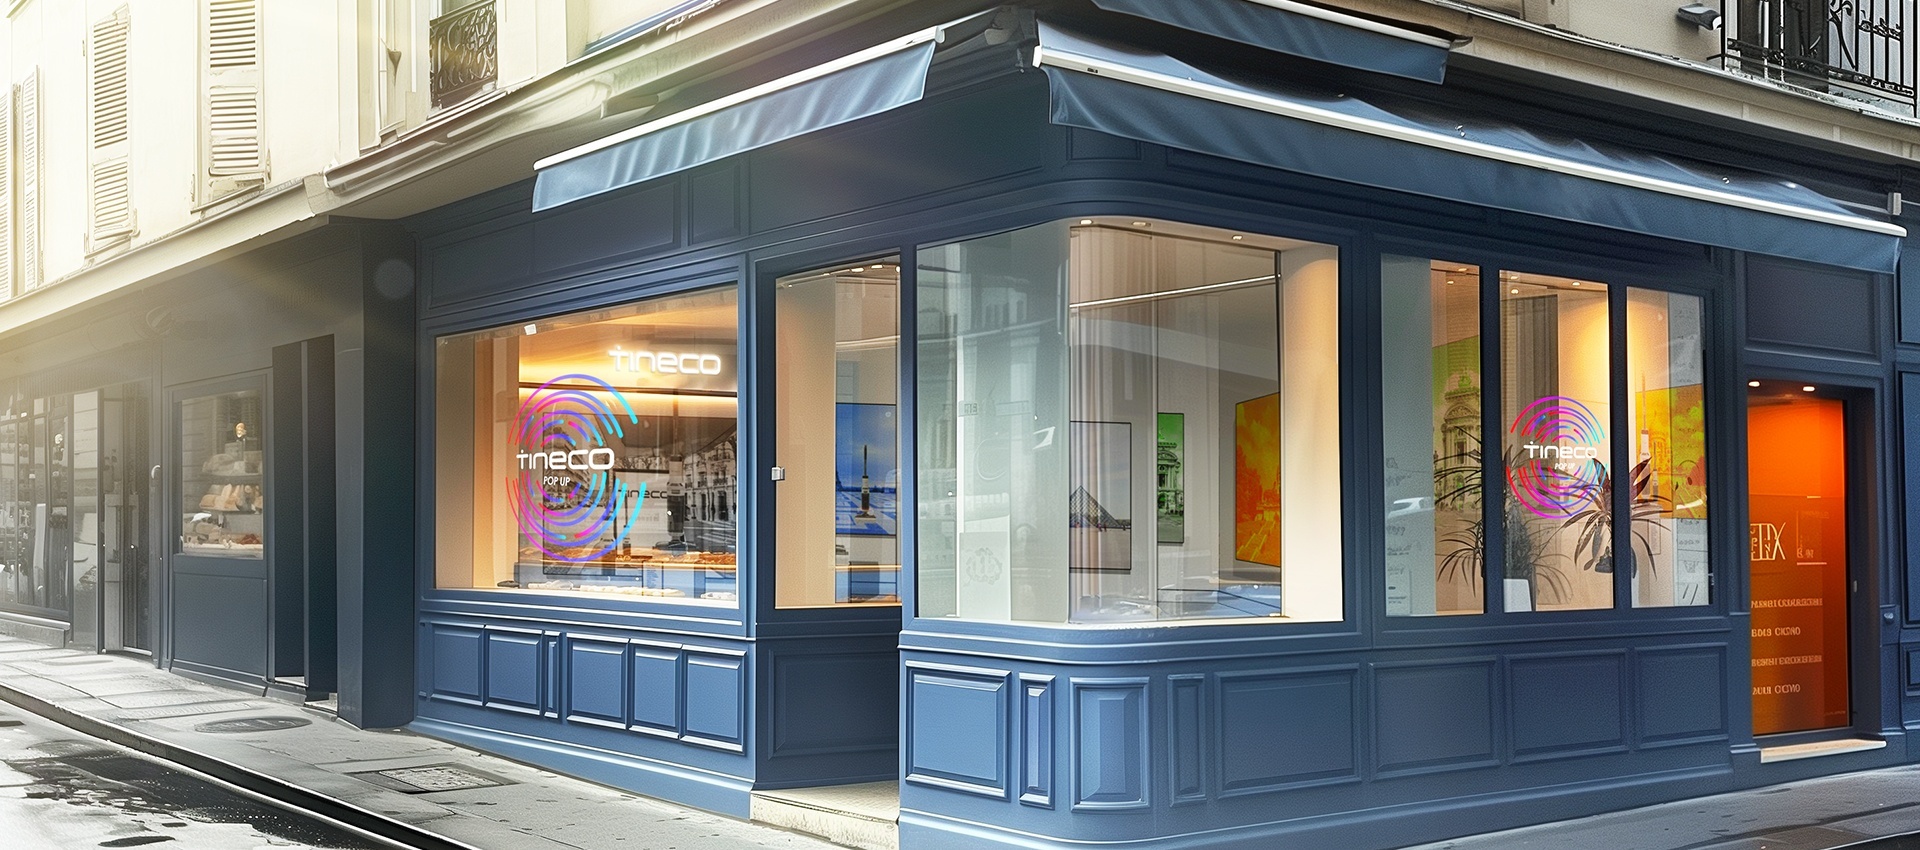 La marque d'électroménagers Tineco ouvre un pop-up store dans le quartier du Marais à Paris. © Tineco